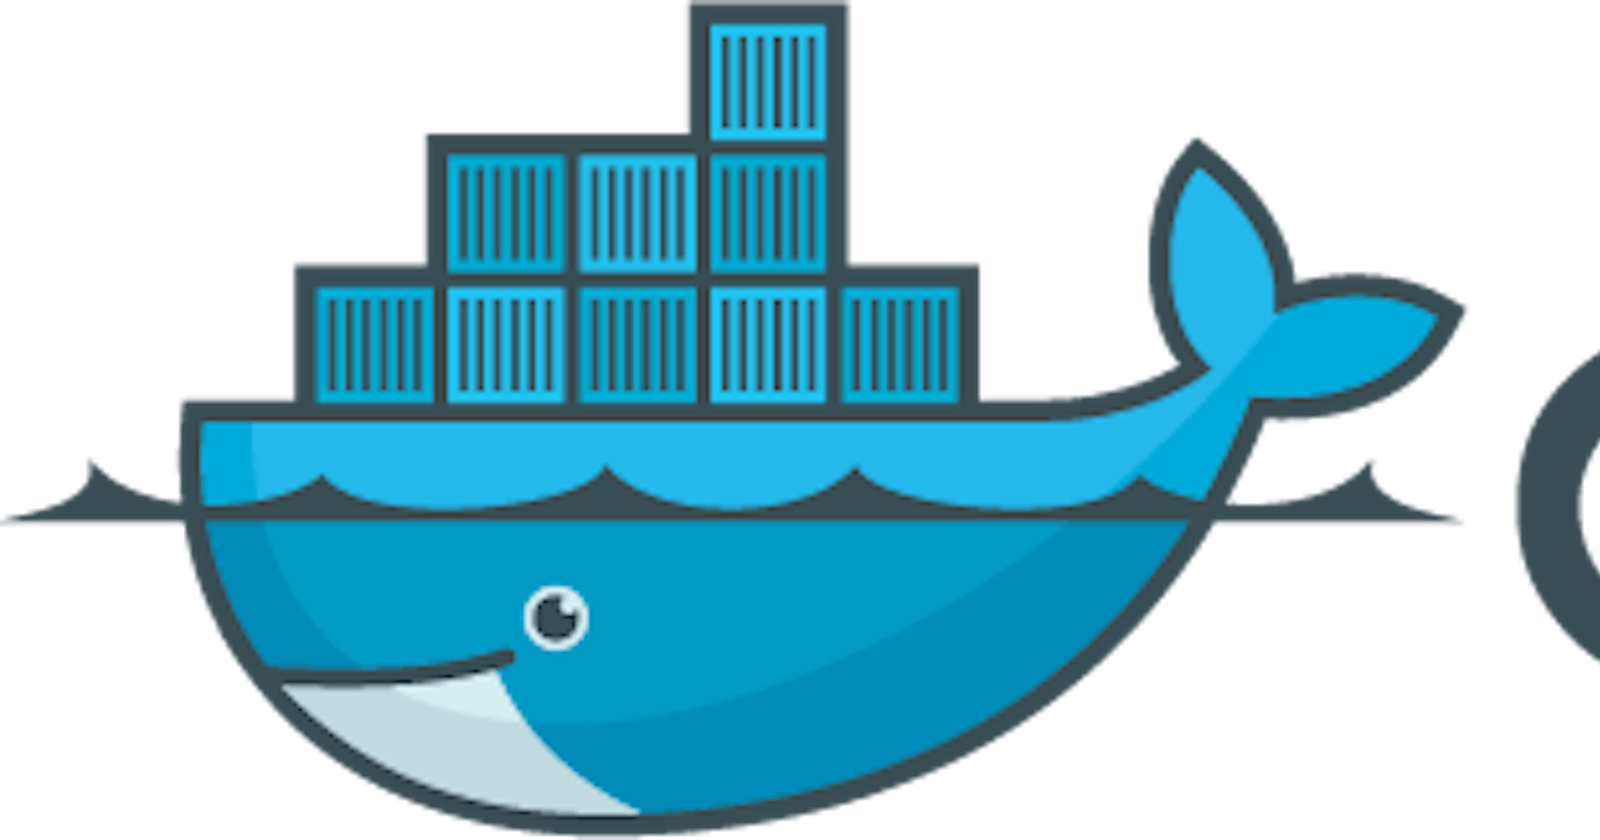 Install Docker engine on RHEL/Centos 8